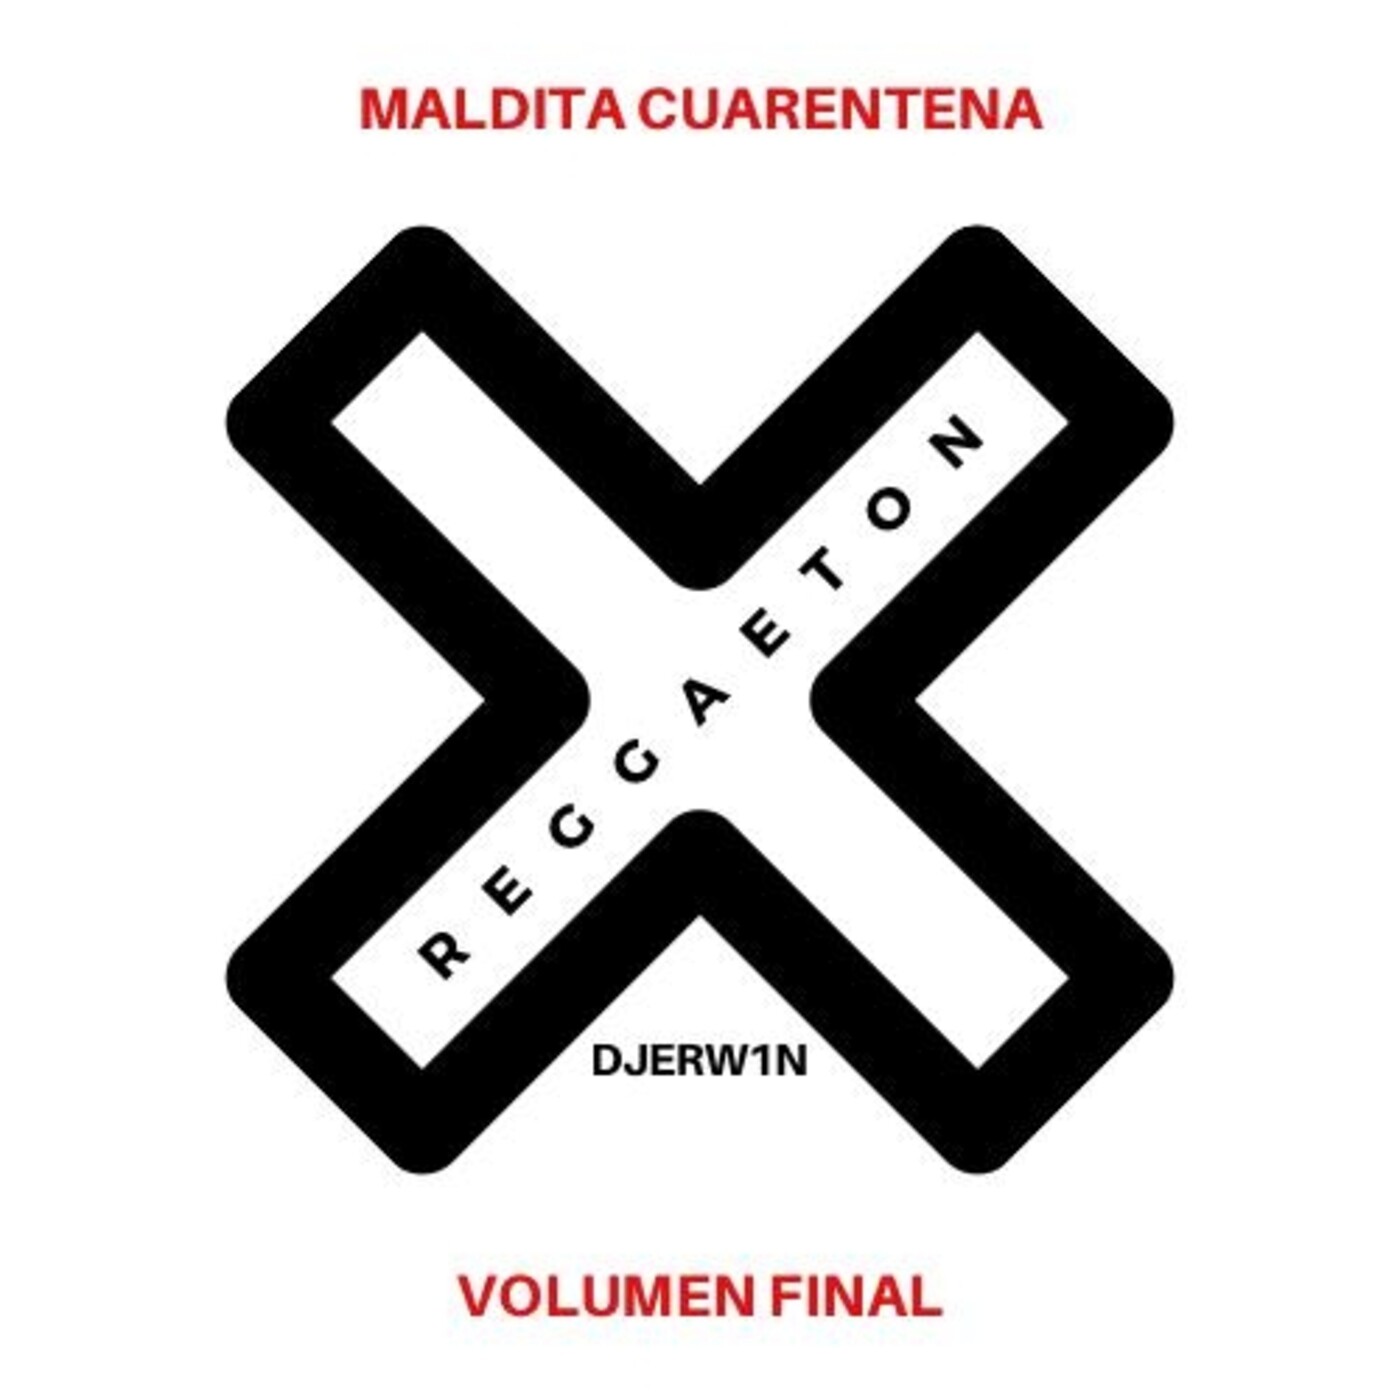 Maldita Cuarentena Vol. Final